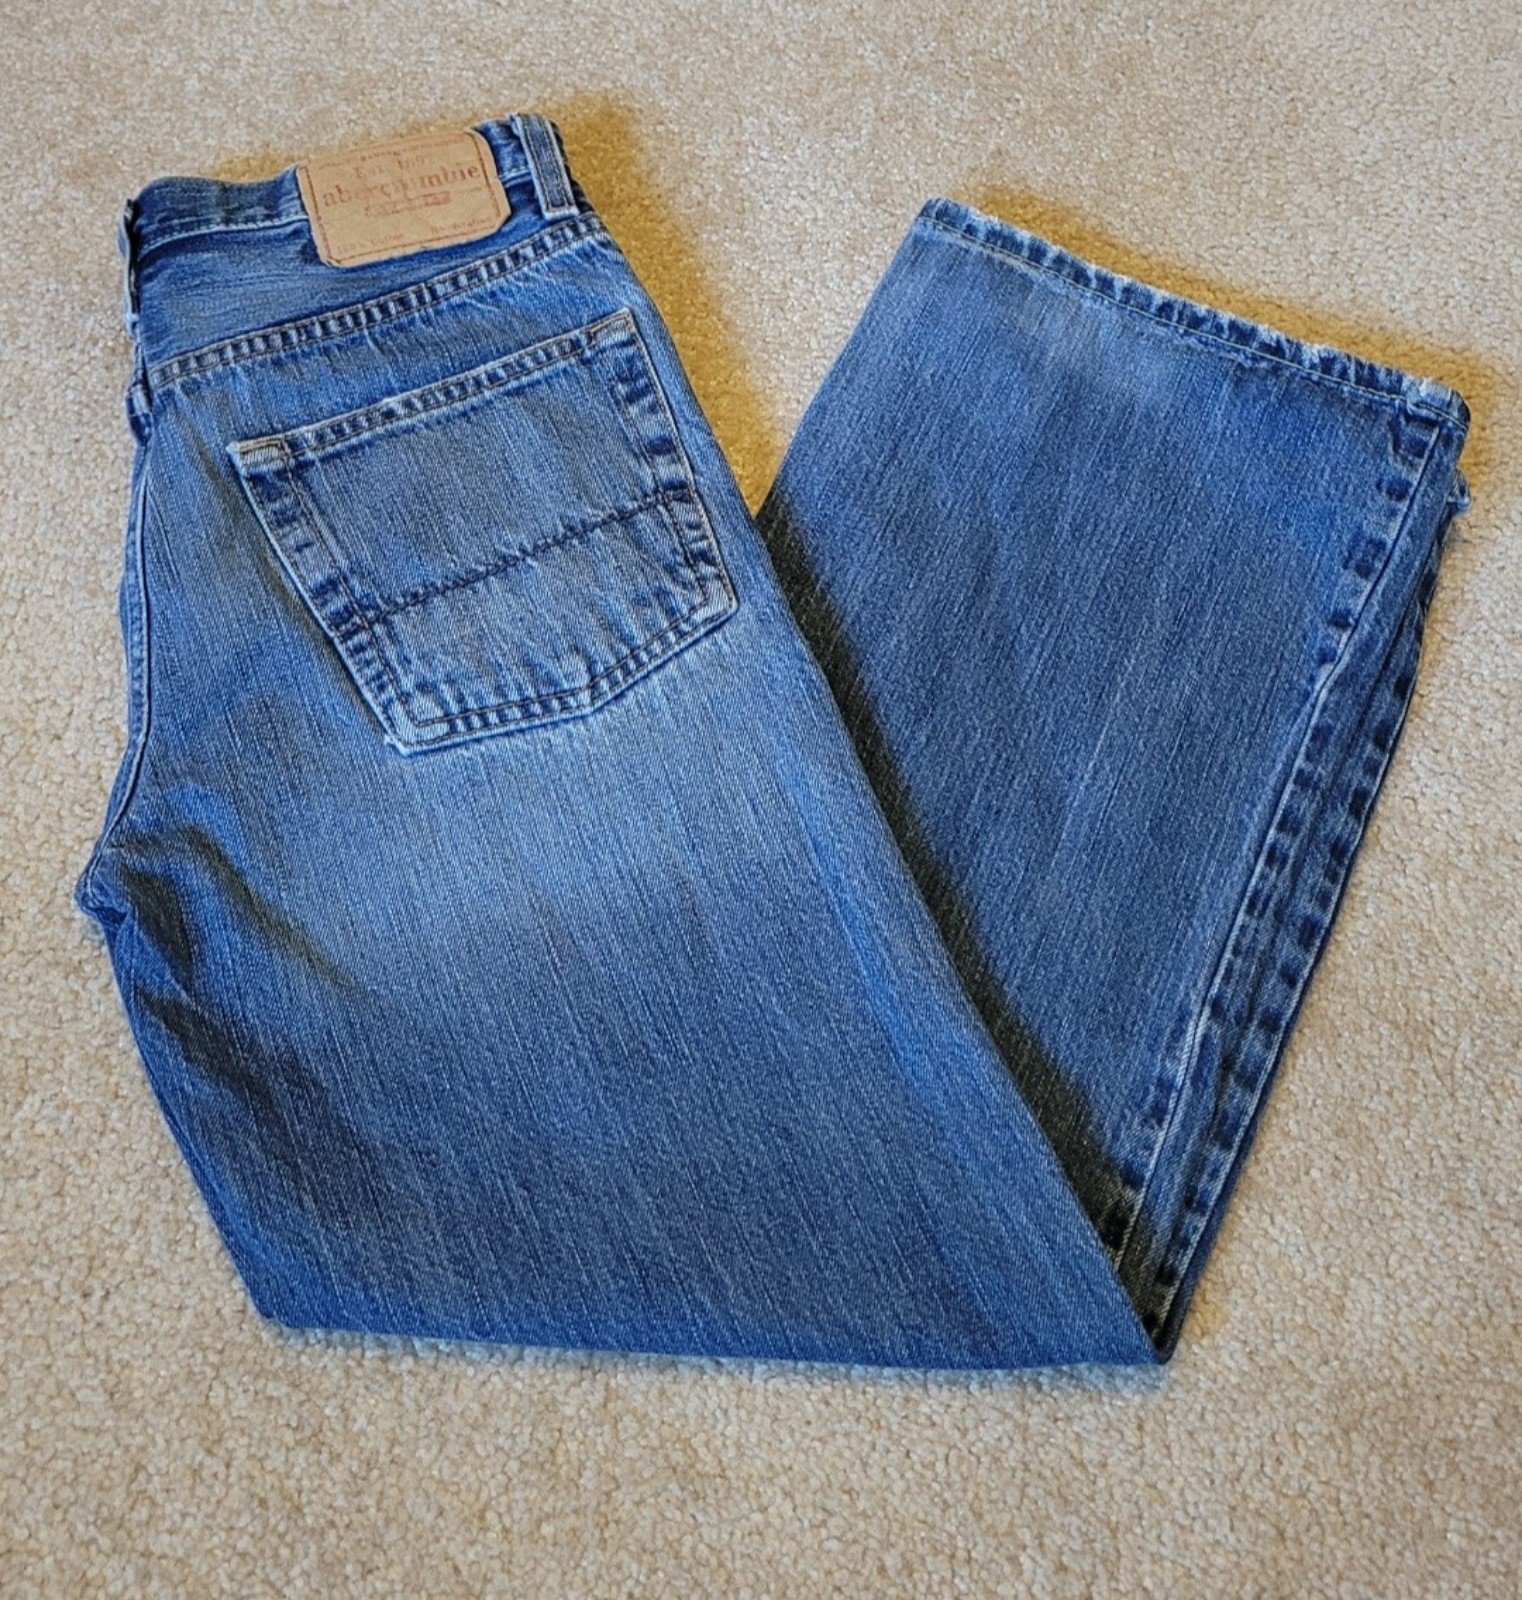 Abercrombie original deniem boys size 14 blue jeans. 100% cotton n6cU3VMnH